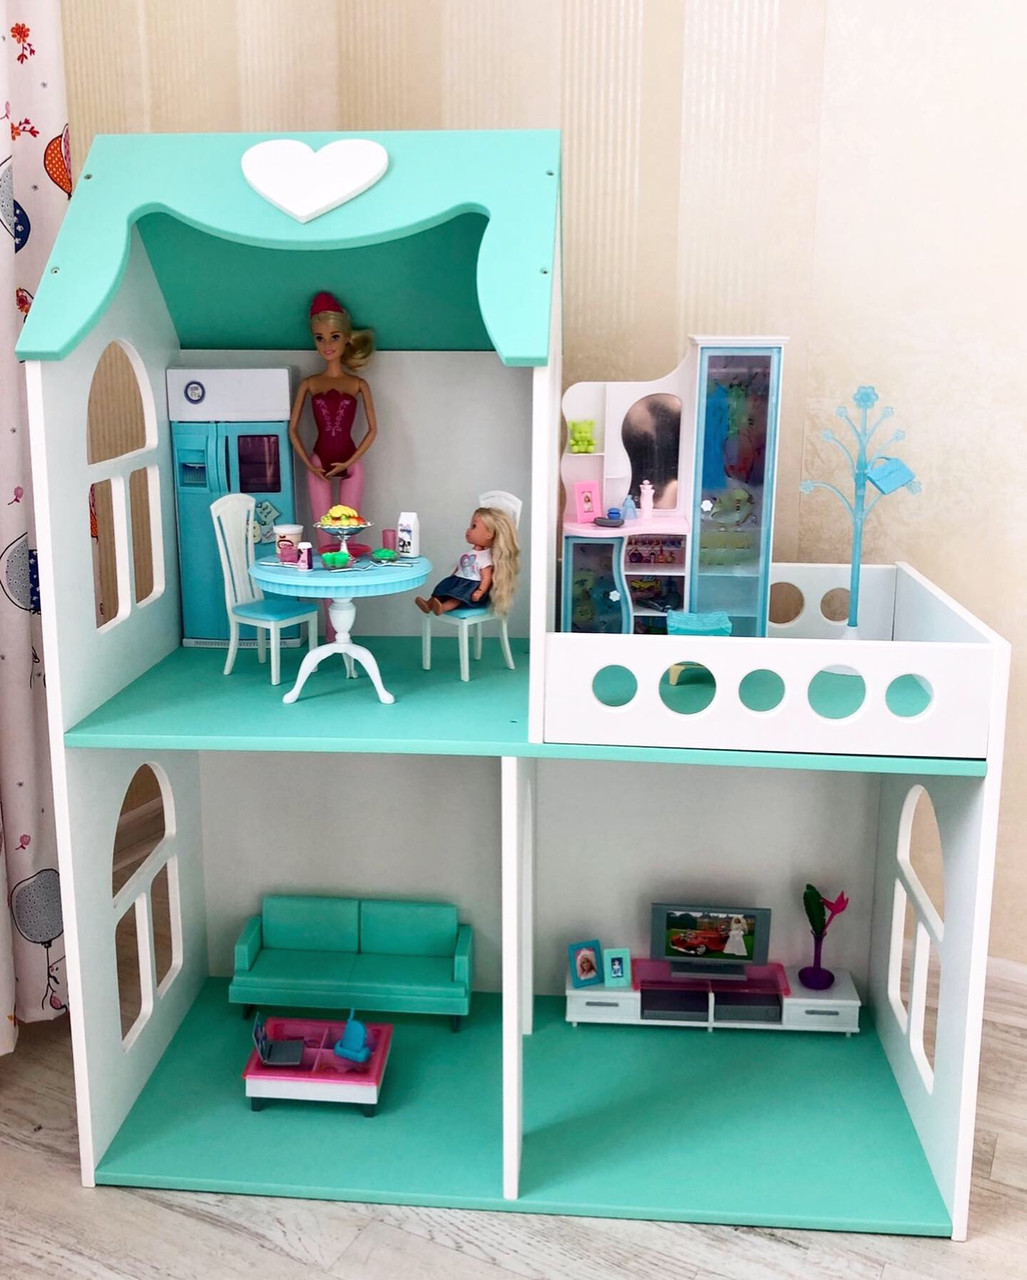 "Міні-дім" ляльковий будинок MagicHouse для ляльок Барбі на 2 поверхи